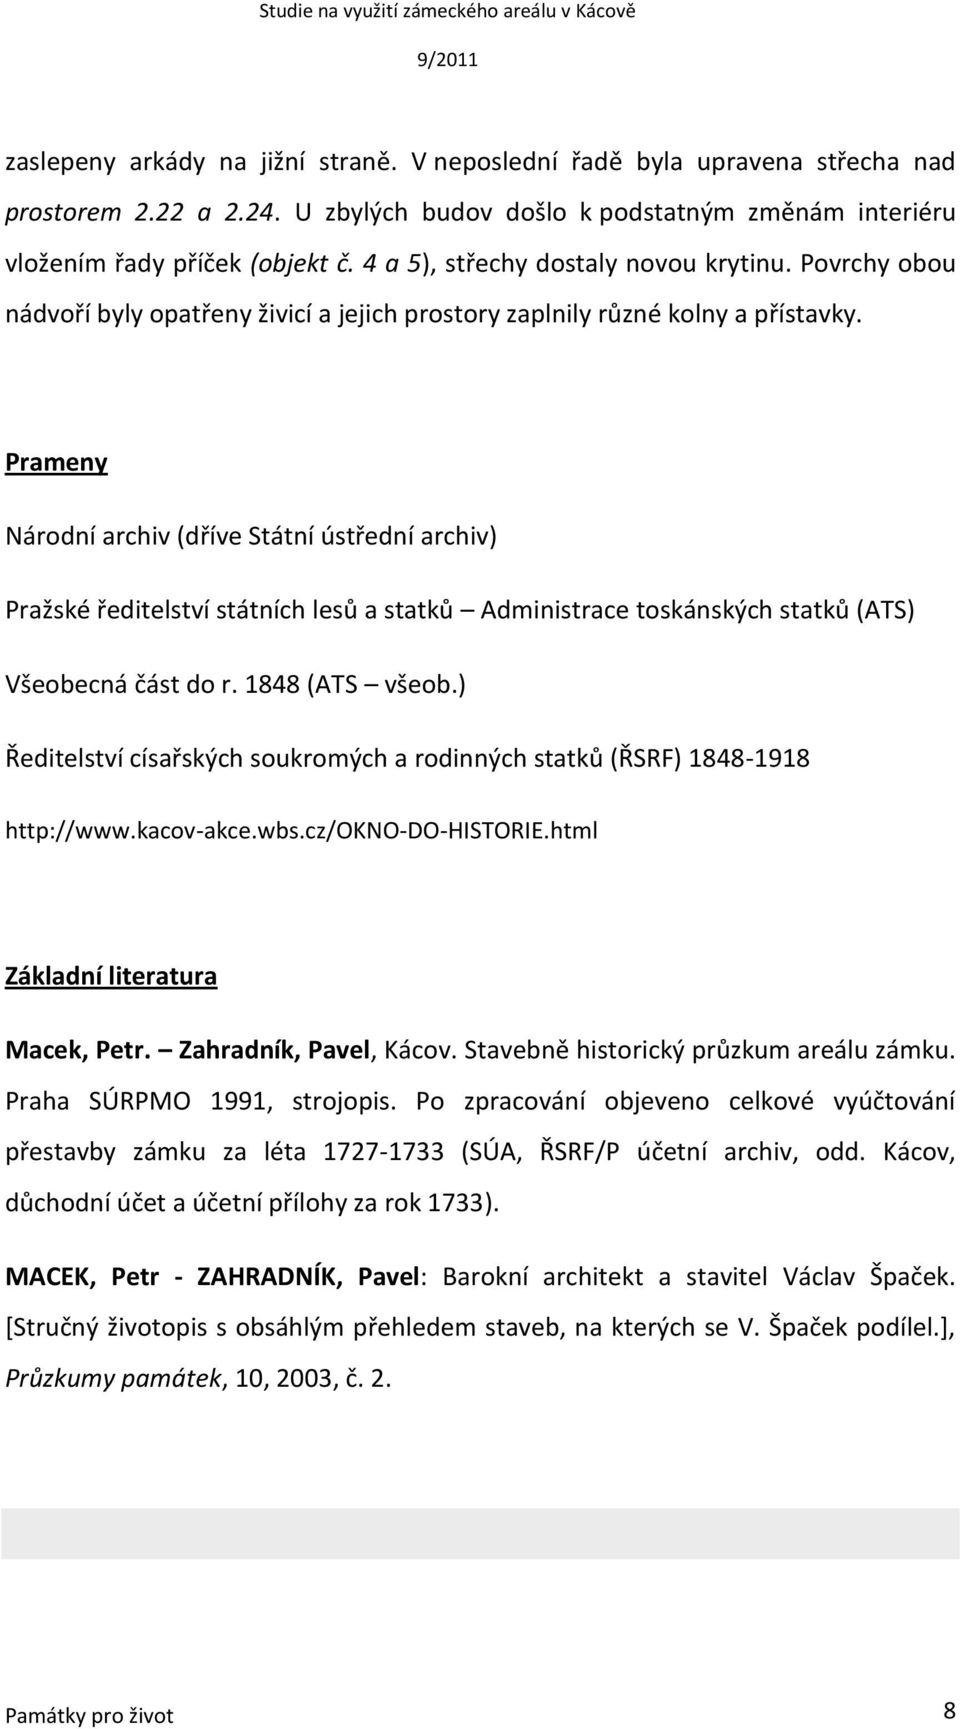 Prameny Národní archiv (dříve Státní ústřední archiv) Pražské ředitelství státních lesů a statků Administrace toskánských statků (ATS) Všeobecná část do r. 1848 (ATS všeob.